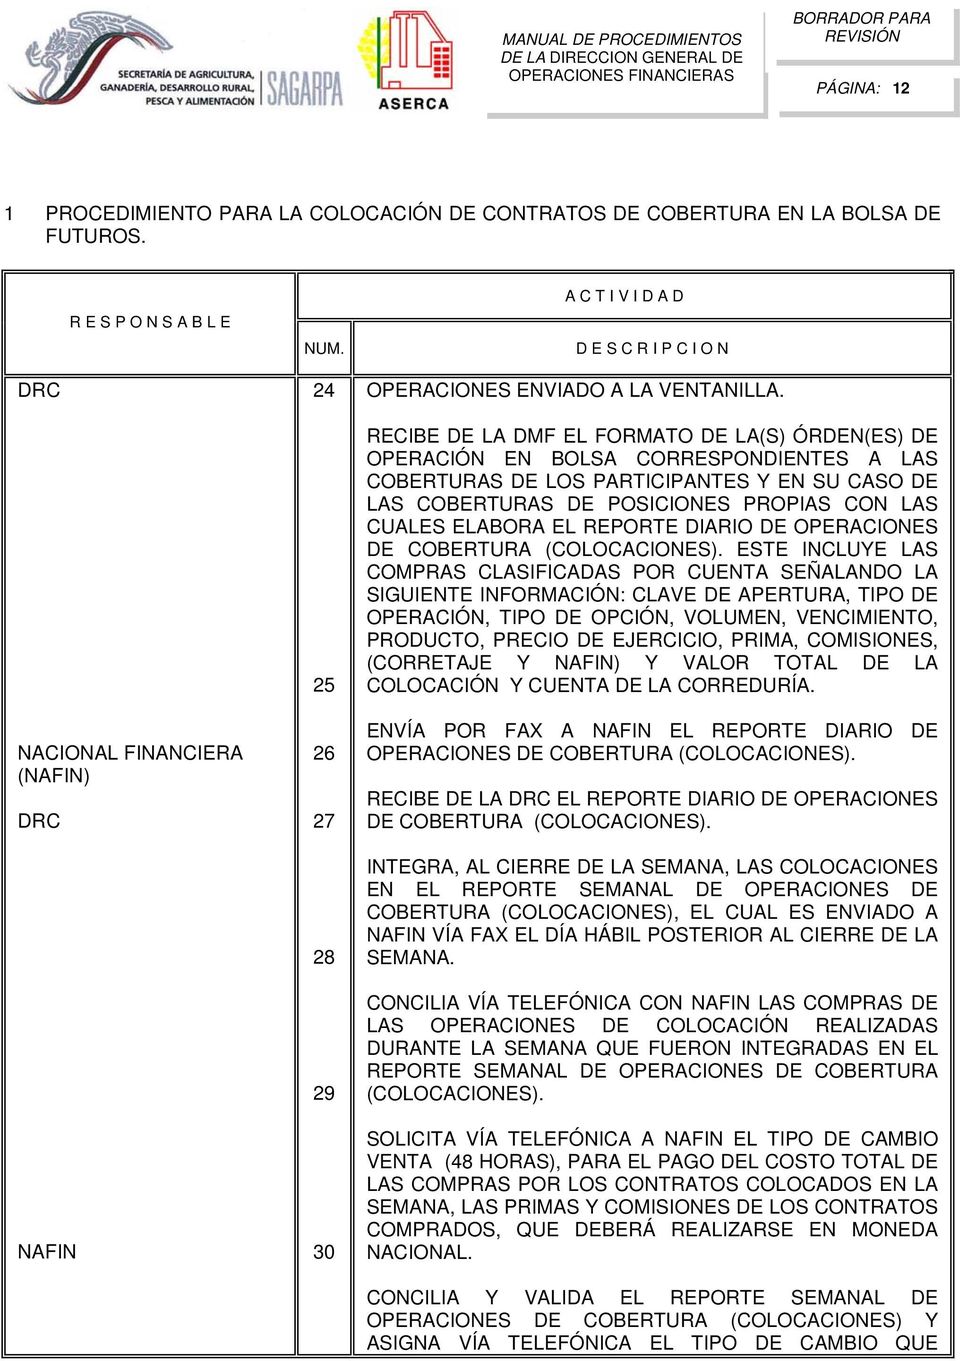 EL REPORTE DIARIO DE OPERACIONES DE COBERTURA (COLOCACIONES).